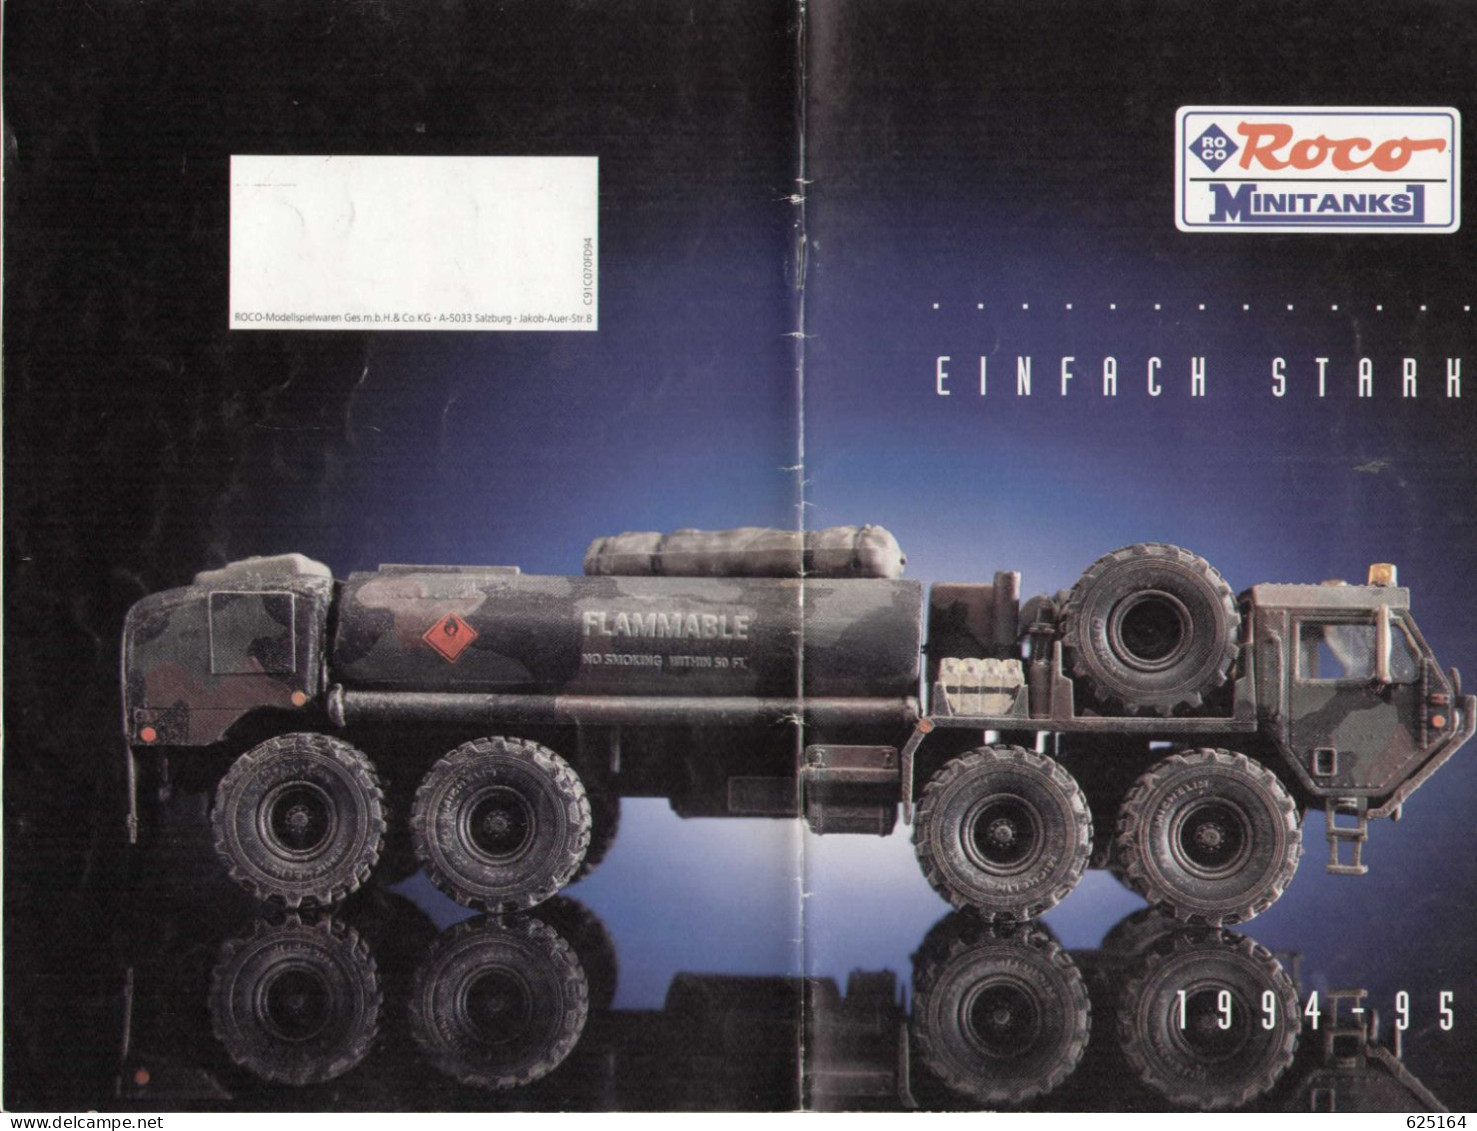 Catalogue ROCO Minitanks 1994-95 Einfach Starh - German